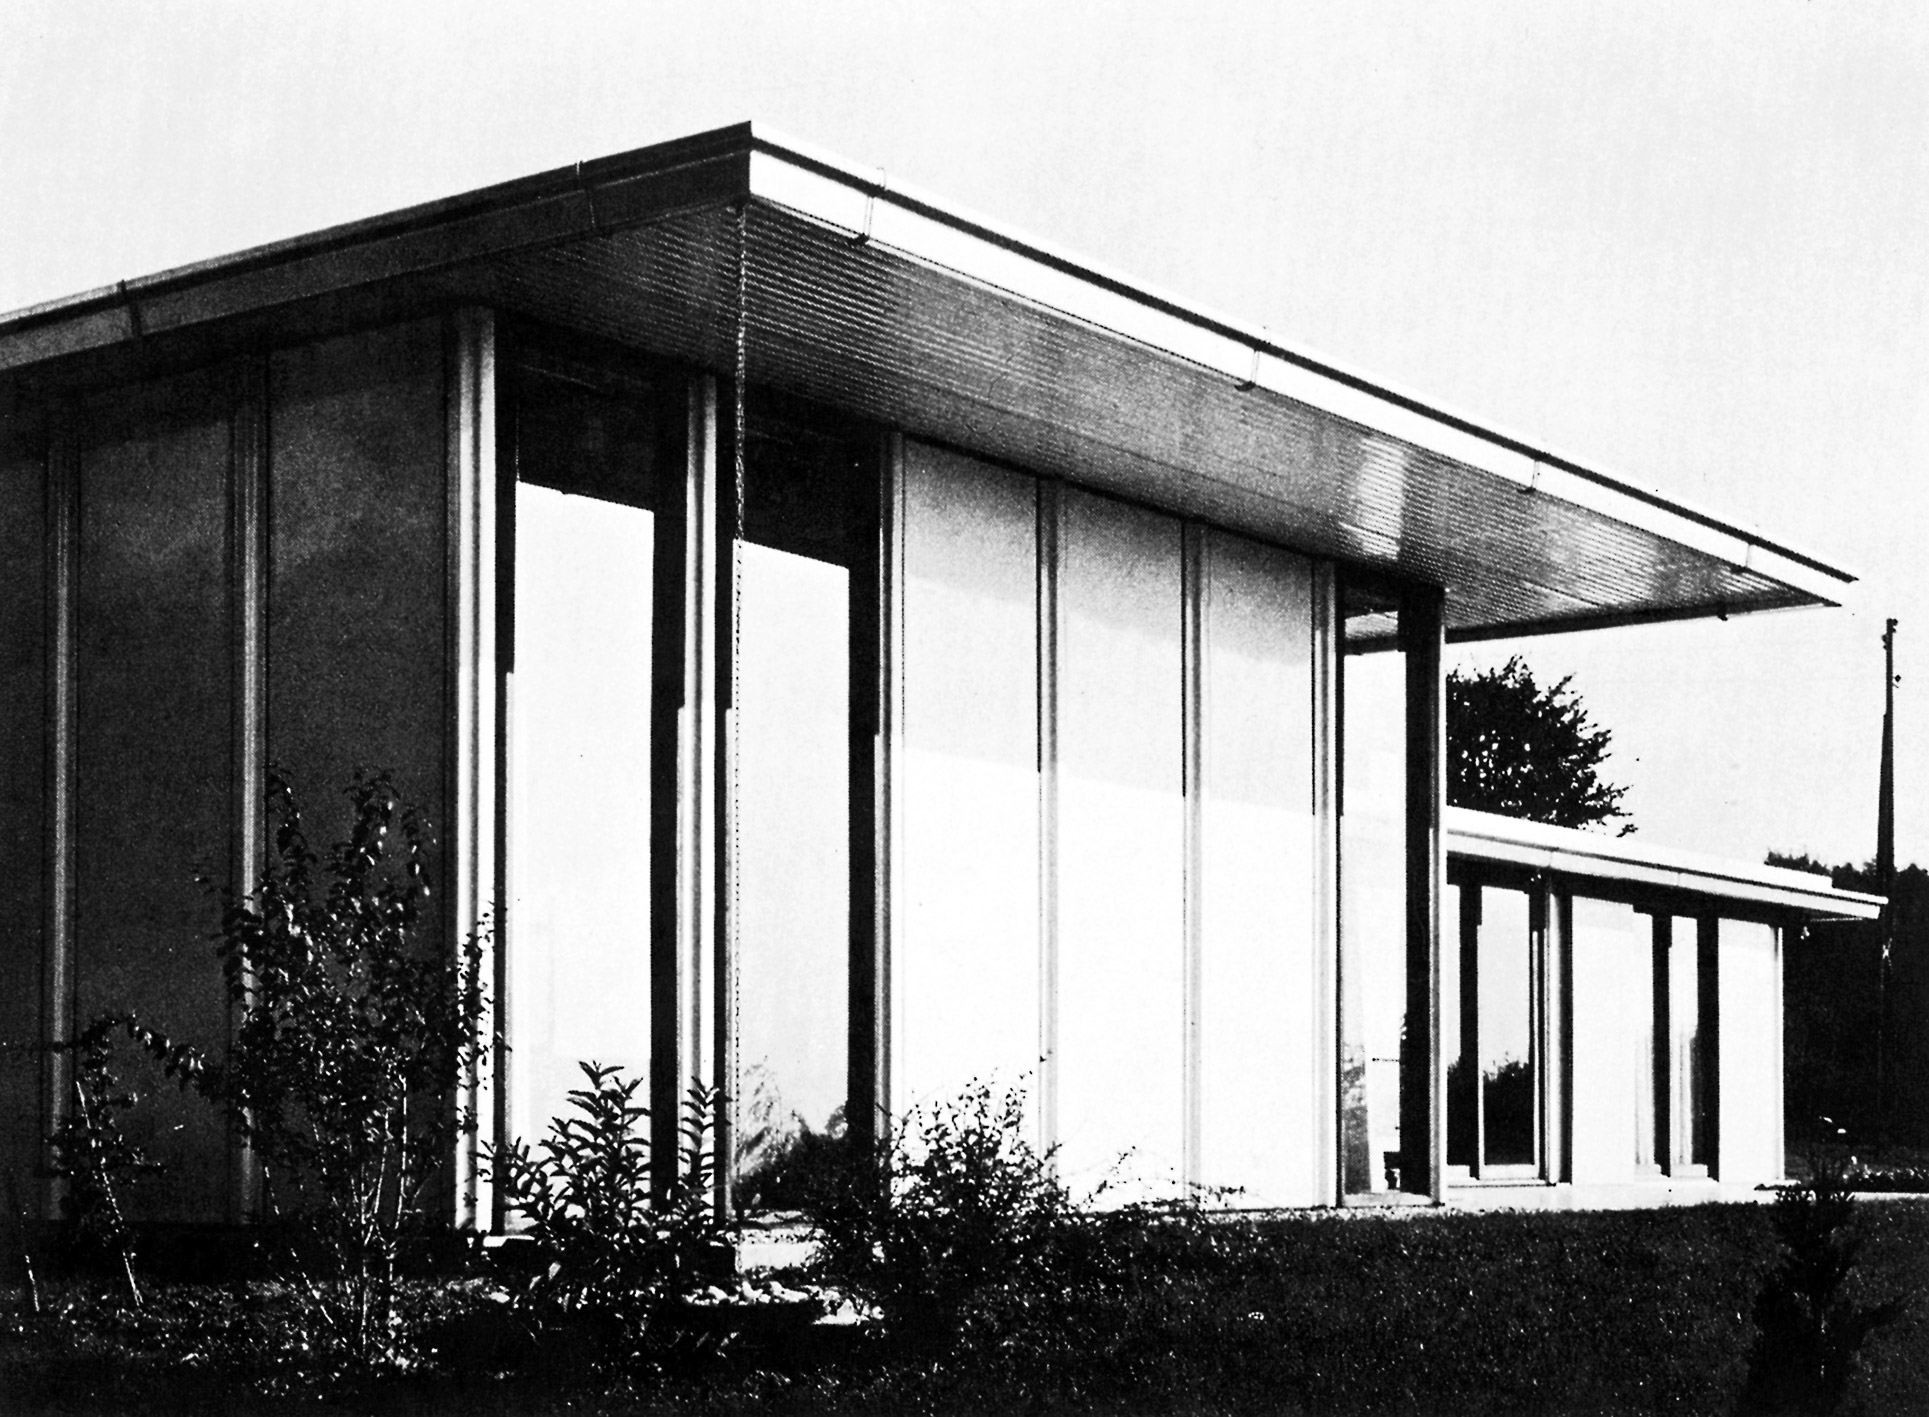 Prototype de maison industrialisée pour Saint-Gobain, Clermont, 1966 (J. Bédier, S. Binotto, R. Hayama, collaborateurs).